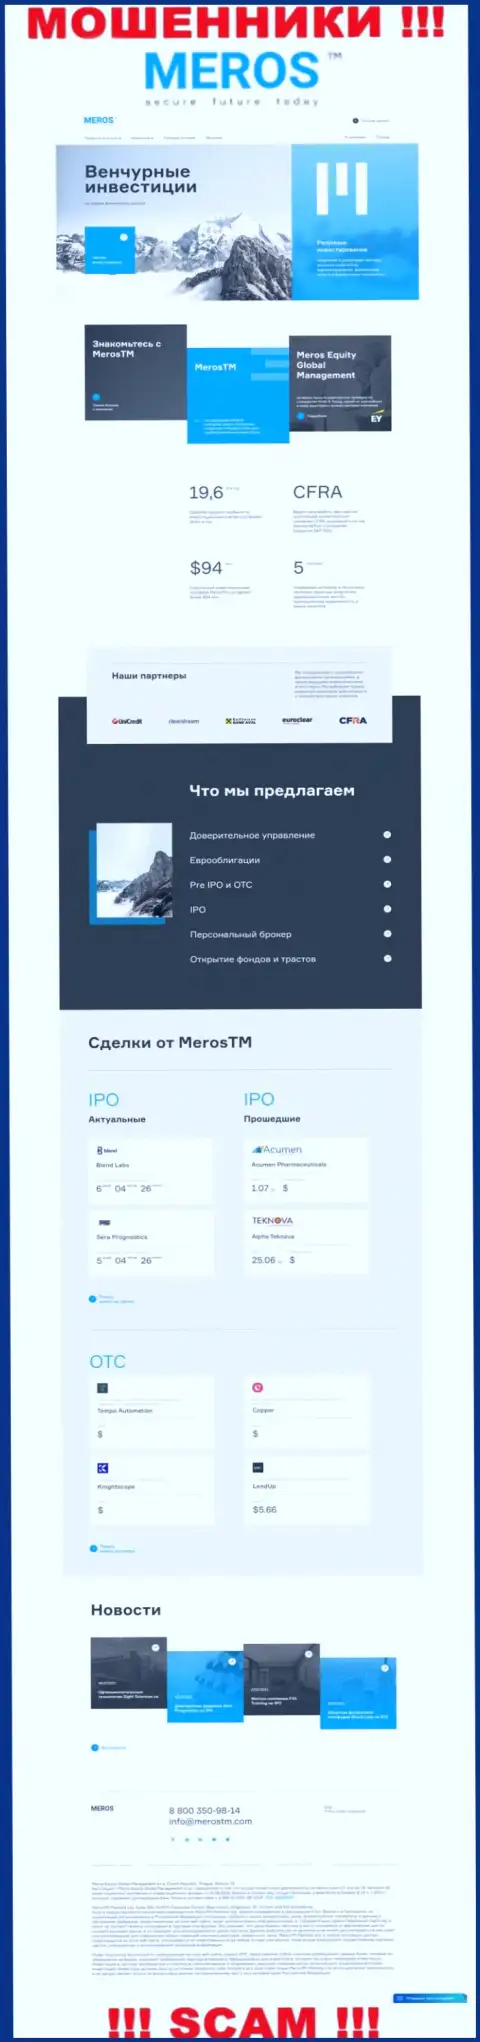 Обзор официального веб-портала махинаторов MerosTM